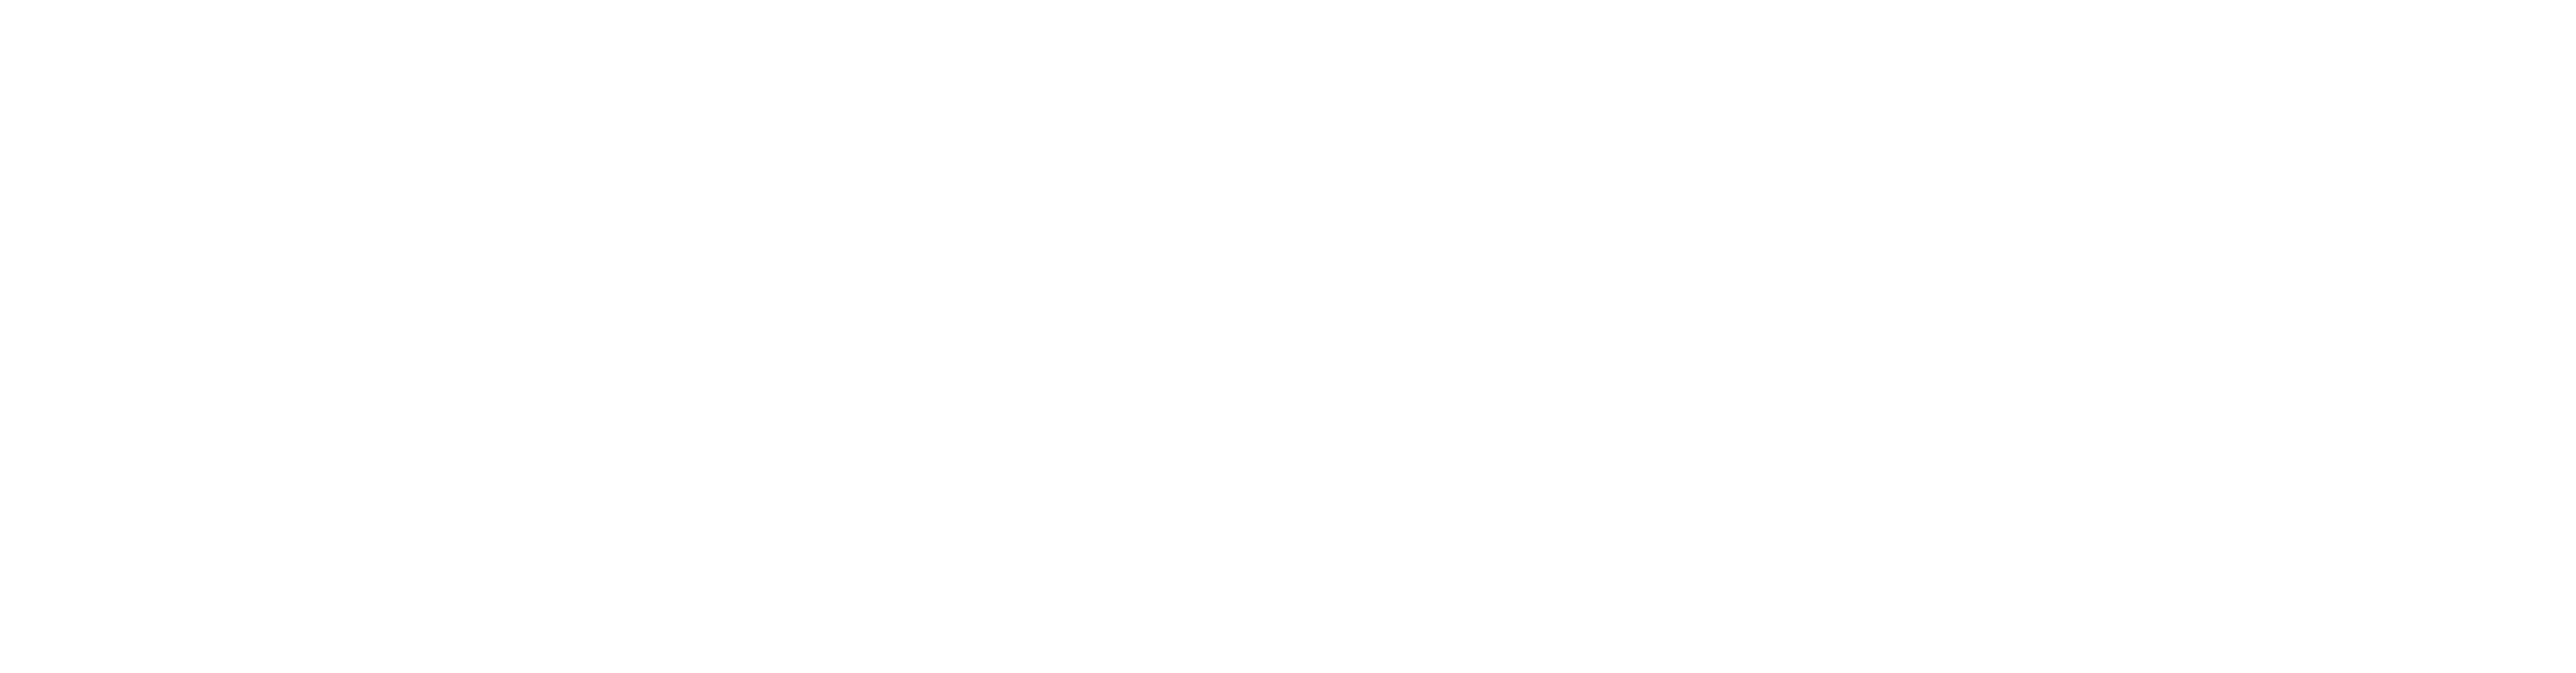 东北亚裔美国人中心白色标志